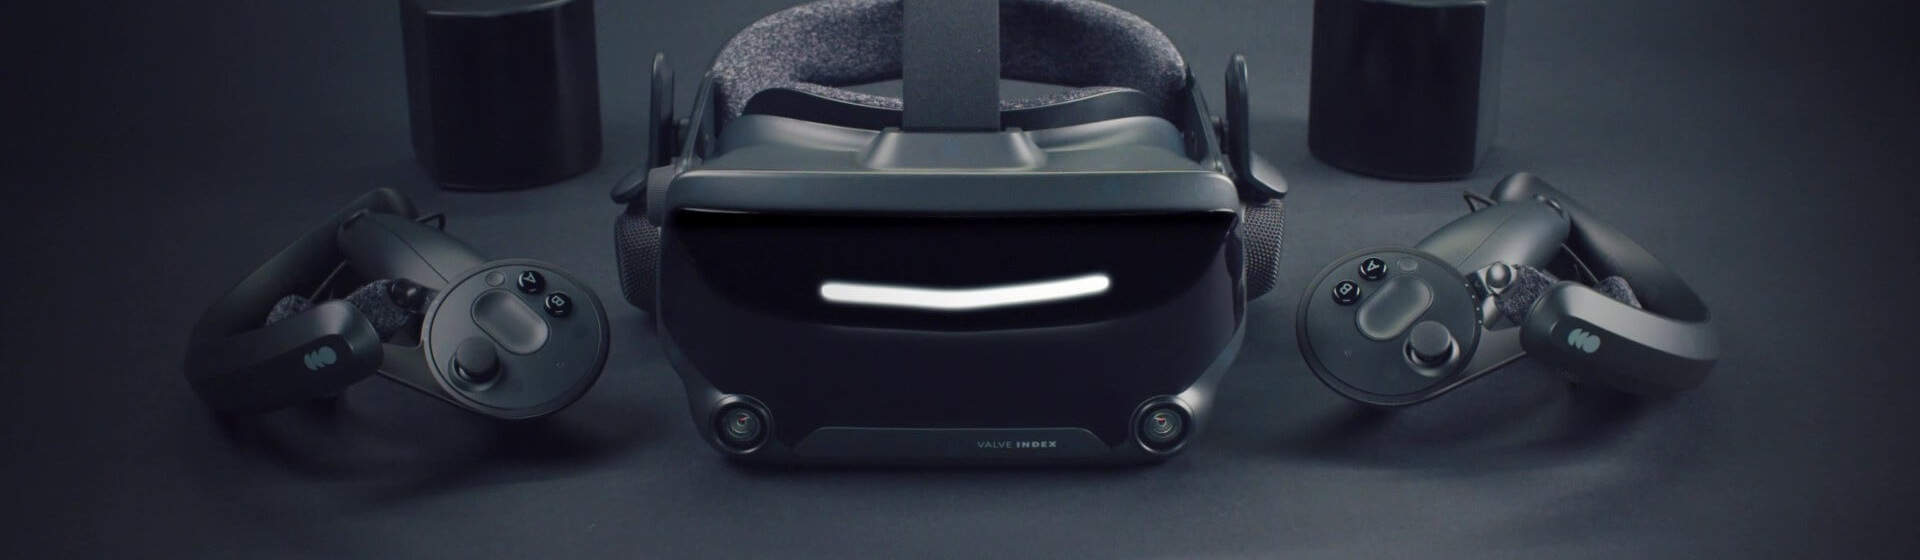 Valve và Apple có thể đang cùng phát triển một bộ kính thực tế tăng cường